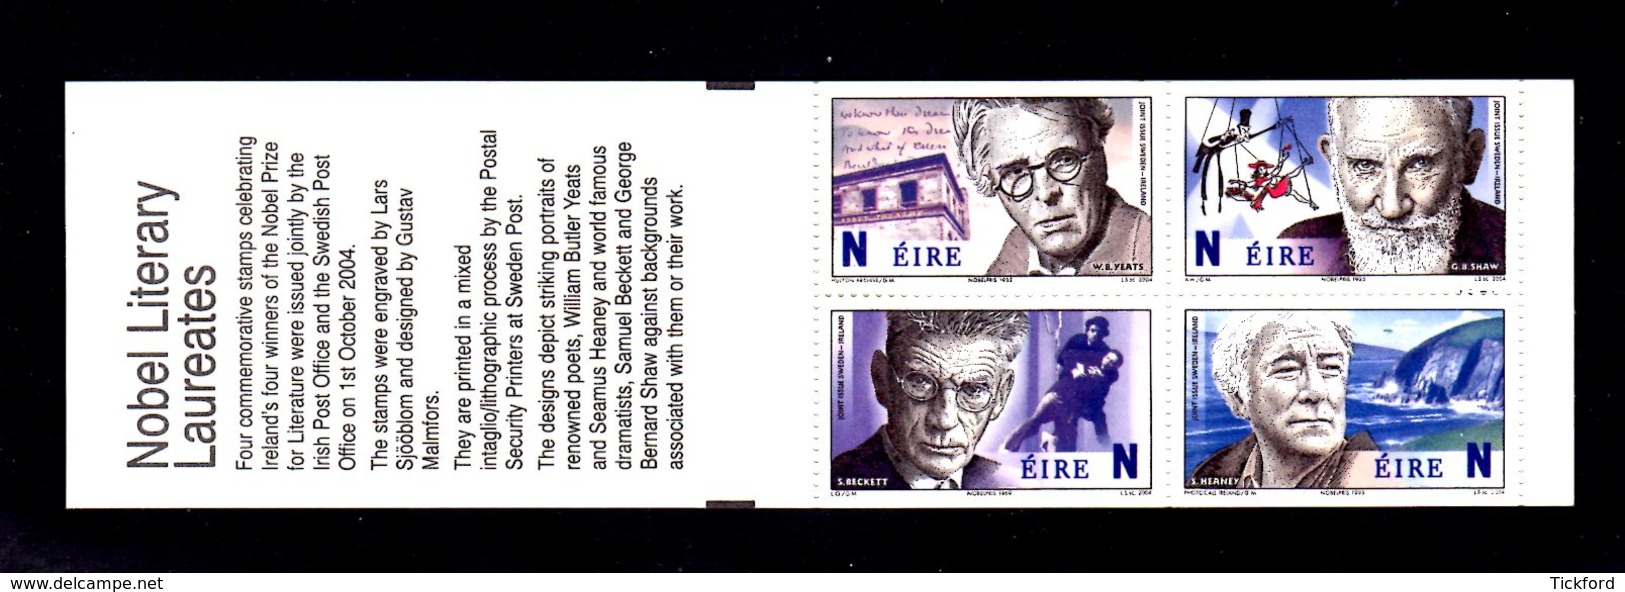 IRLANDE 2004 - CARNET Yvert C1614a - NEUF** MNH - Lauréats Prix Nobel De Littérature Irlandais - Markenheftchen